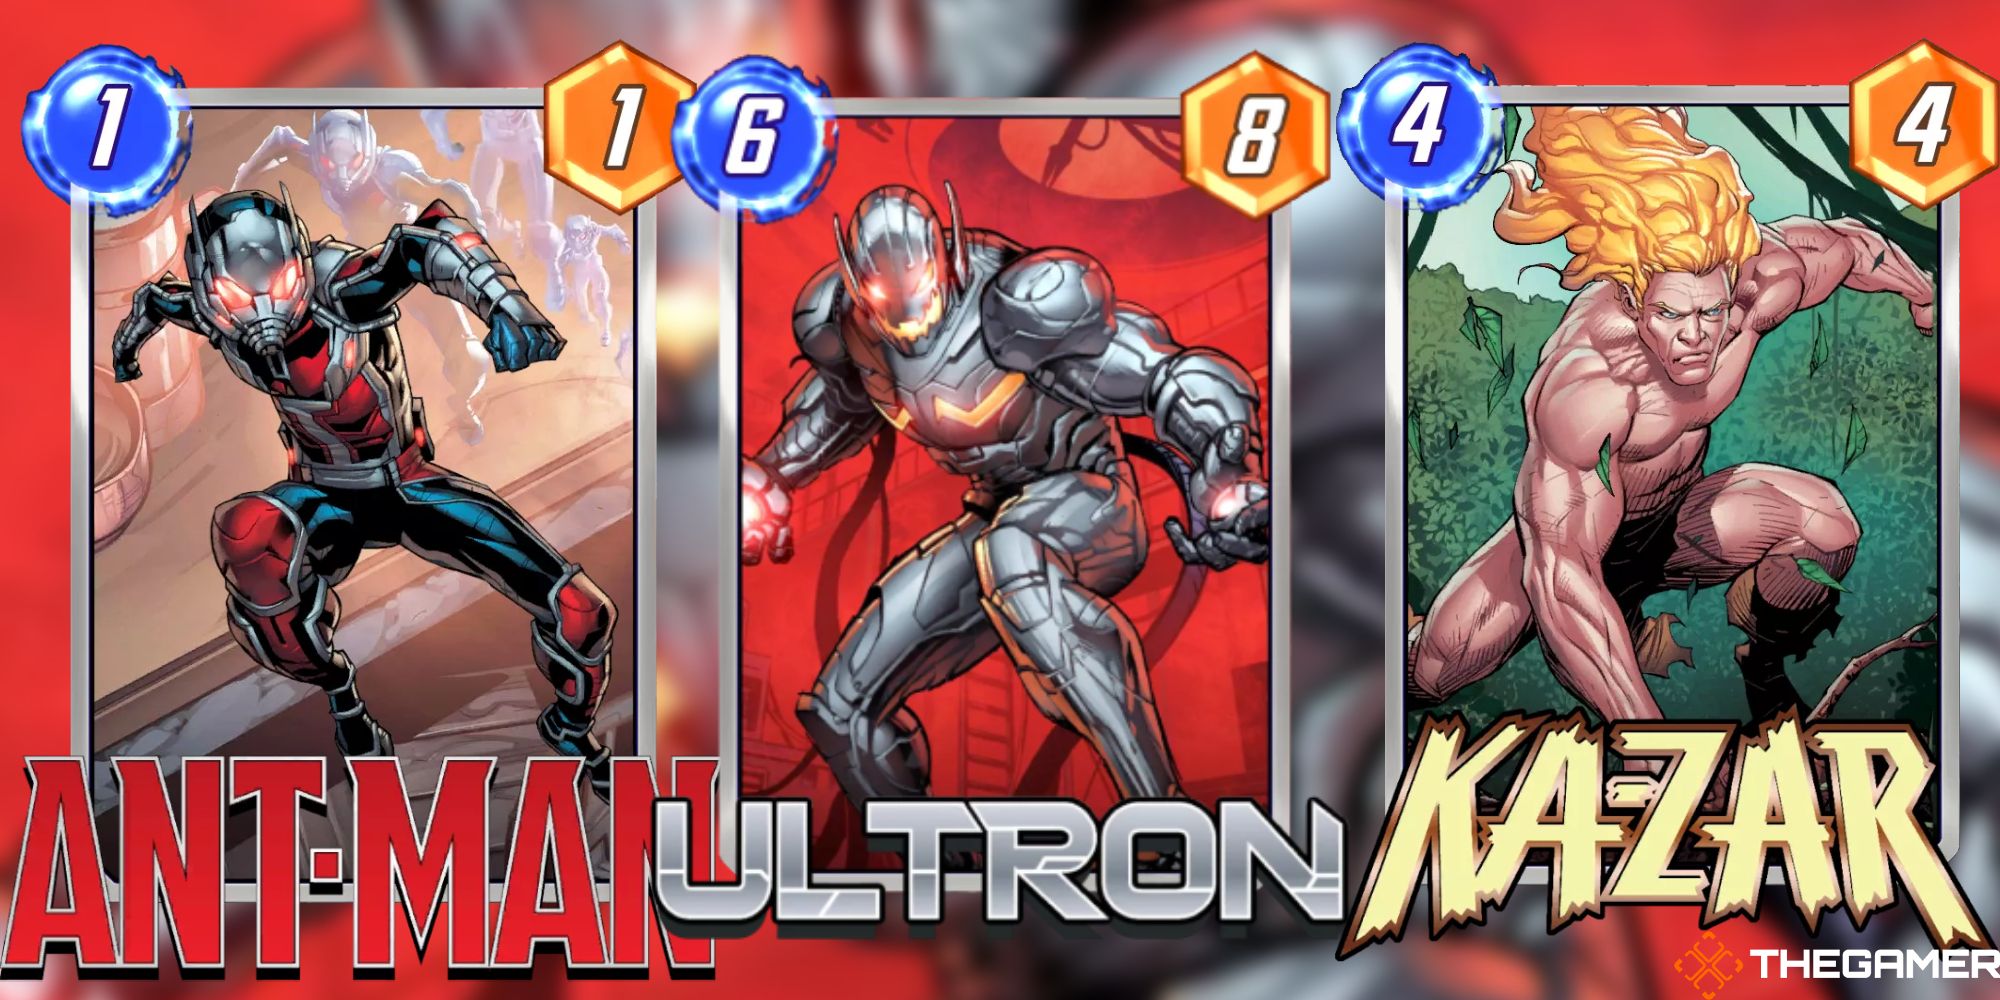 Ant-Man, Ultron, and Ka-Zar standard variants